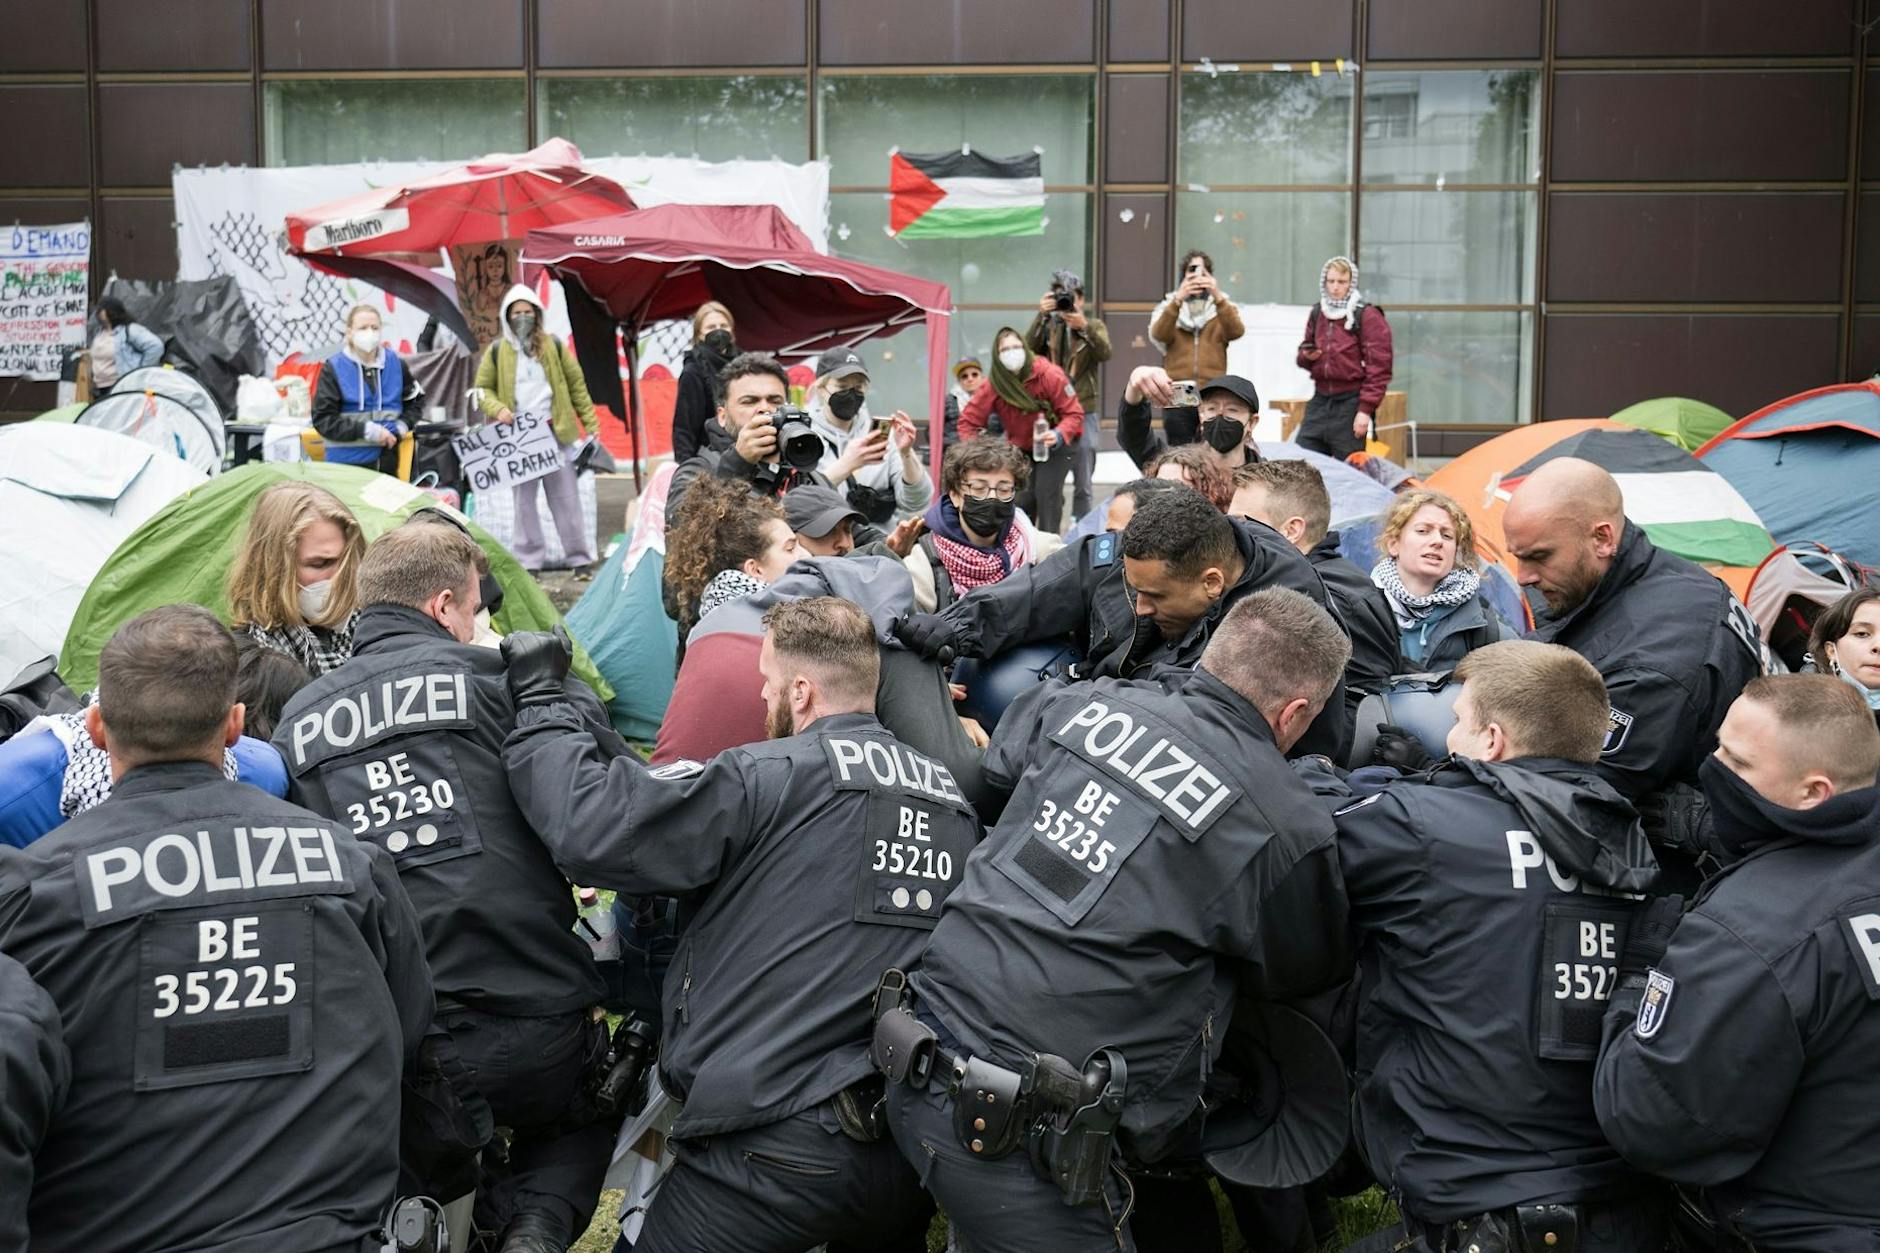 Palästina-Protest in Berlin: Lehrende kritisieren FU-Präsident Günter Ziegler wegen Polizeieinsatz